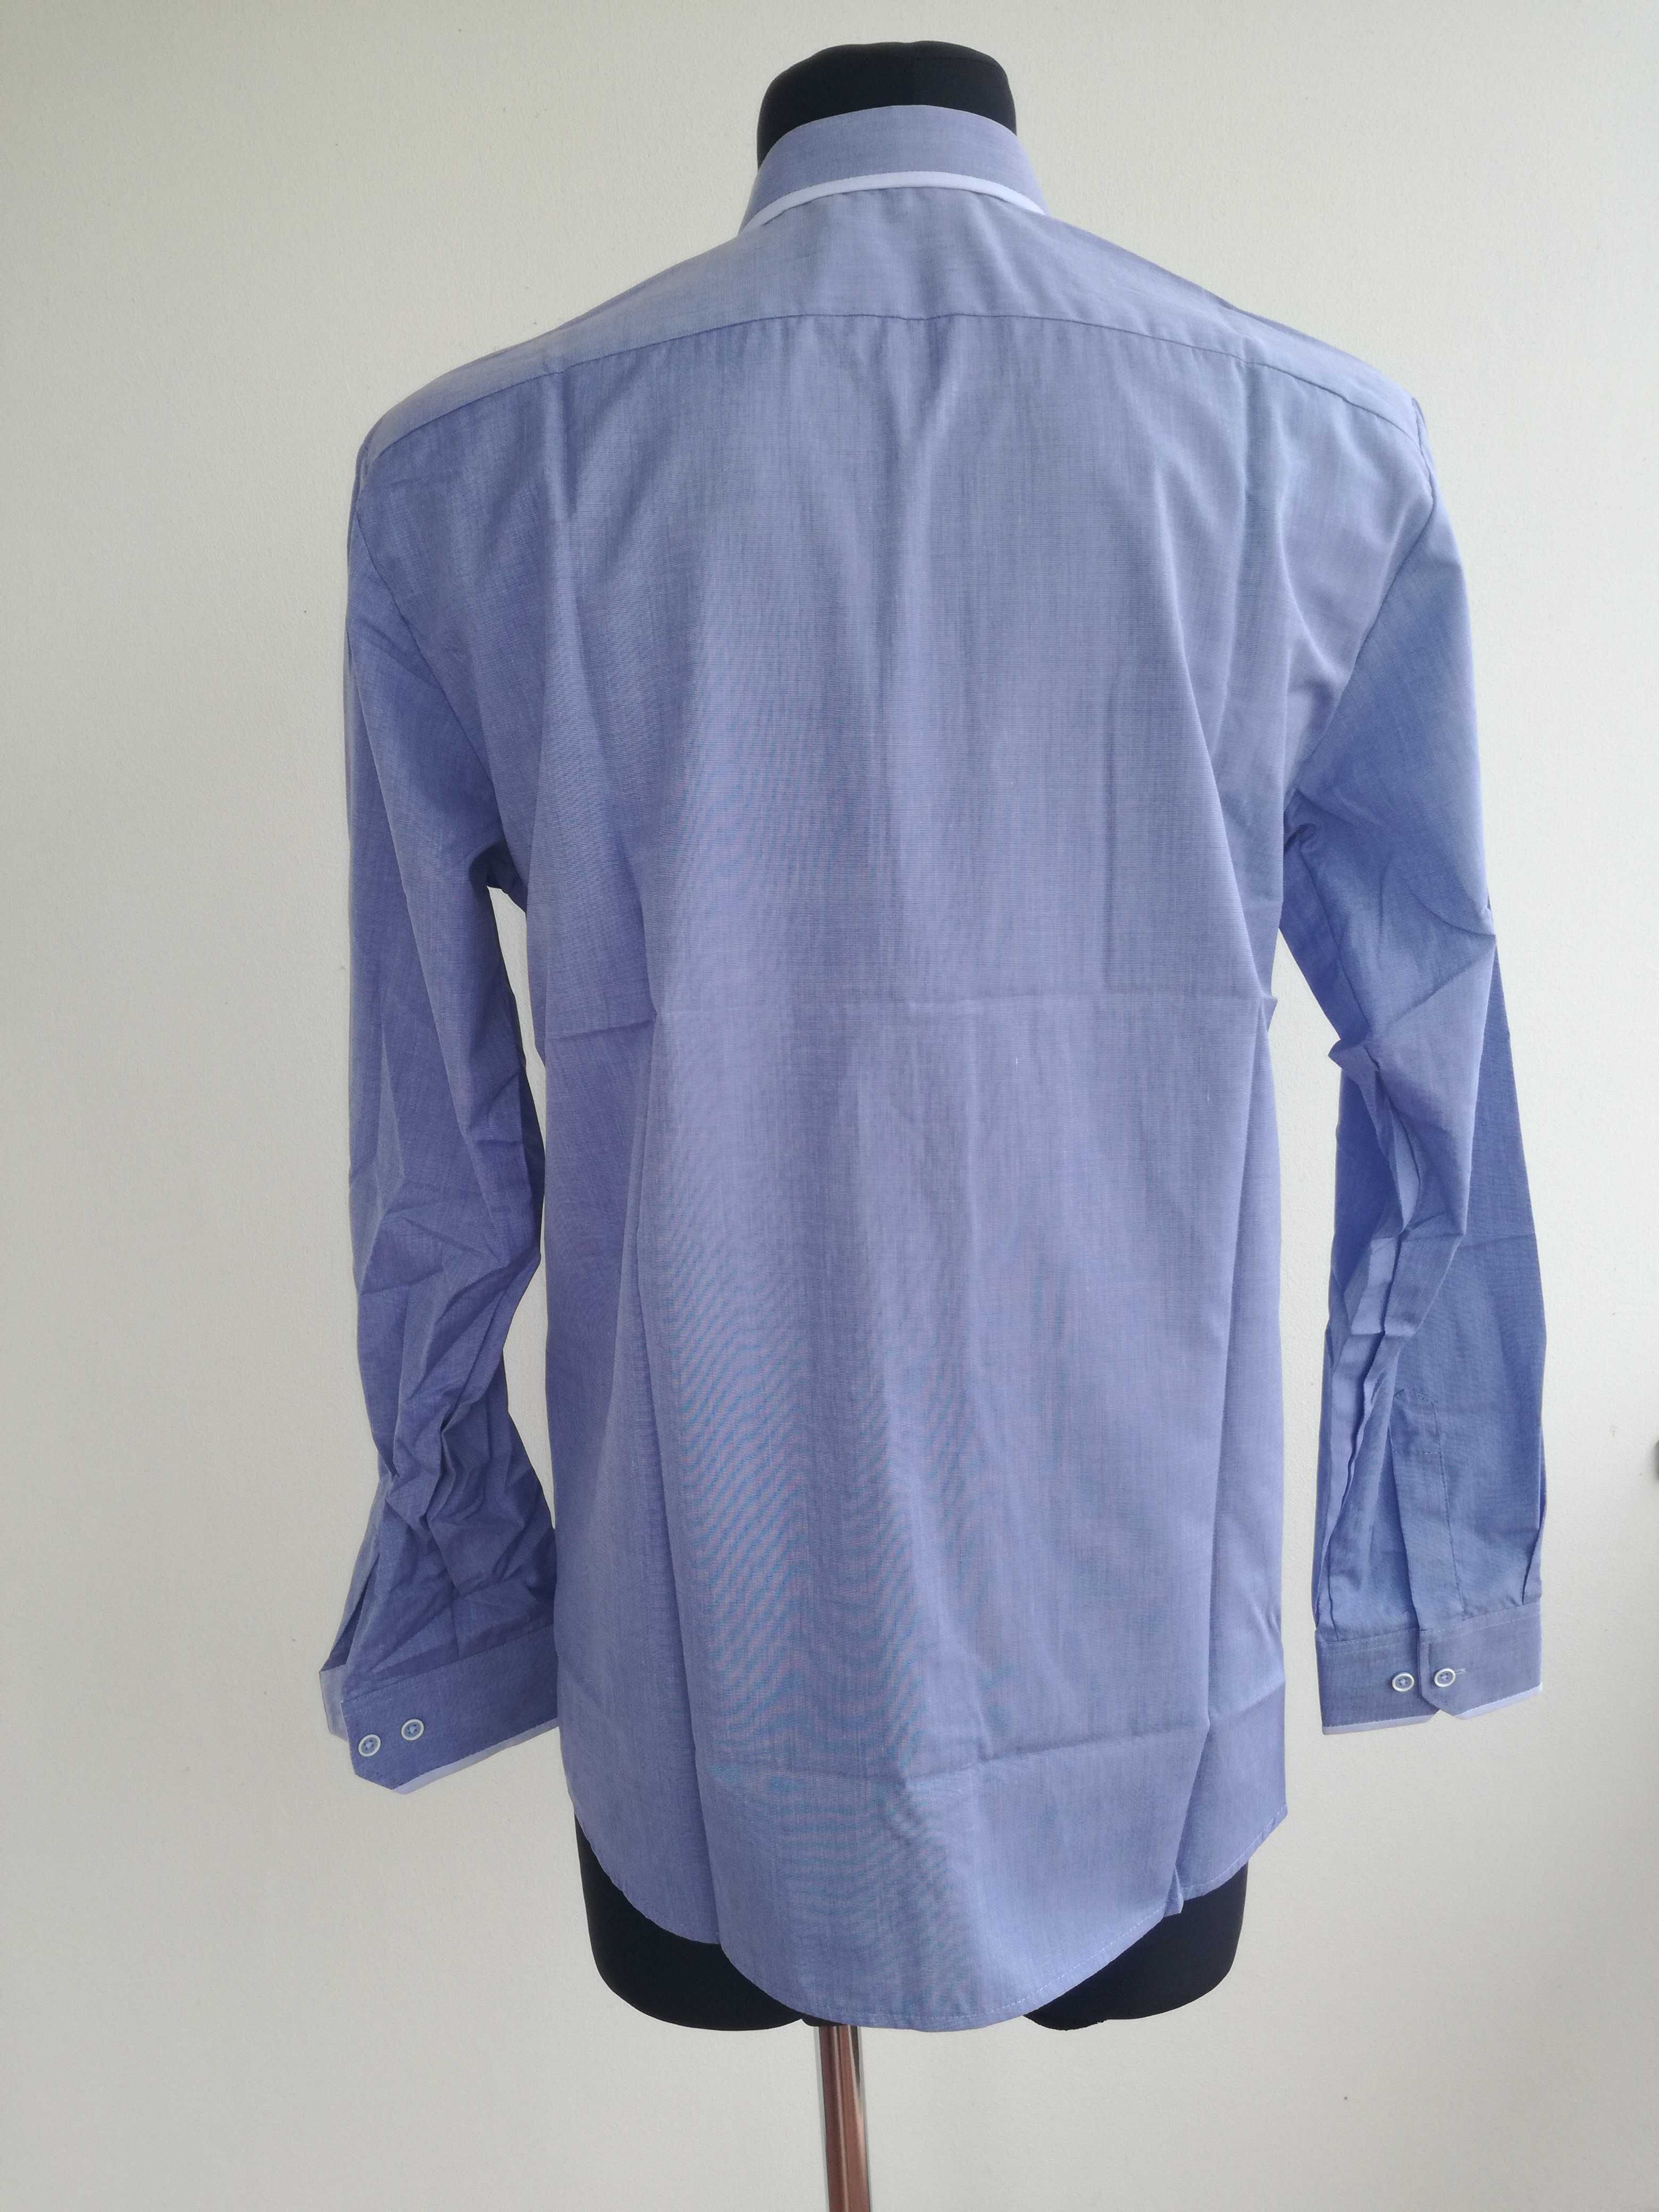 Koszula męska nowa 39-40 rozmiar 176-182 wzrost kolor niebieski